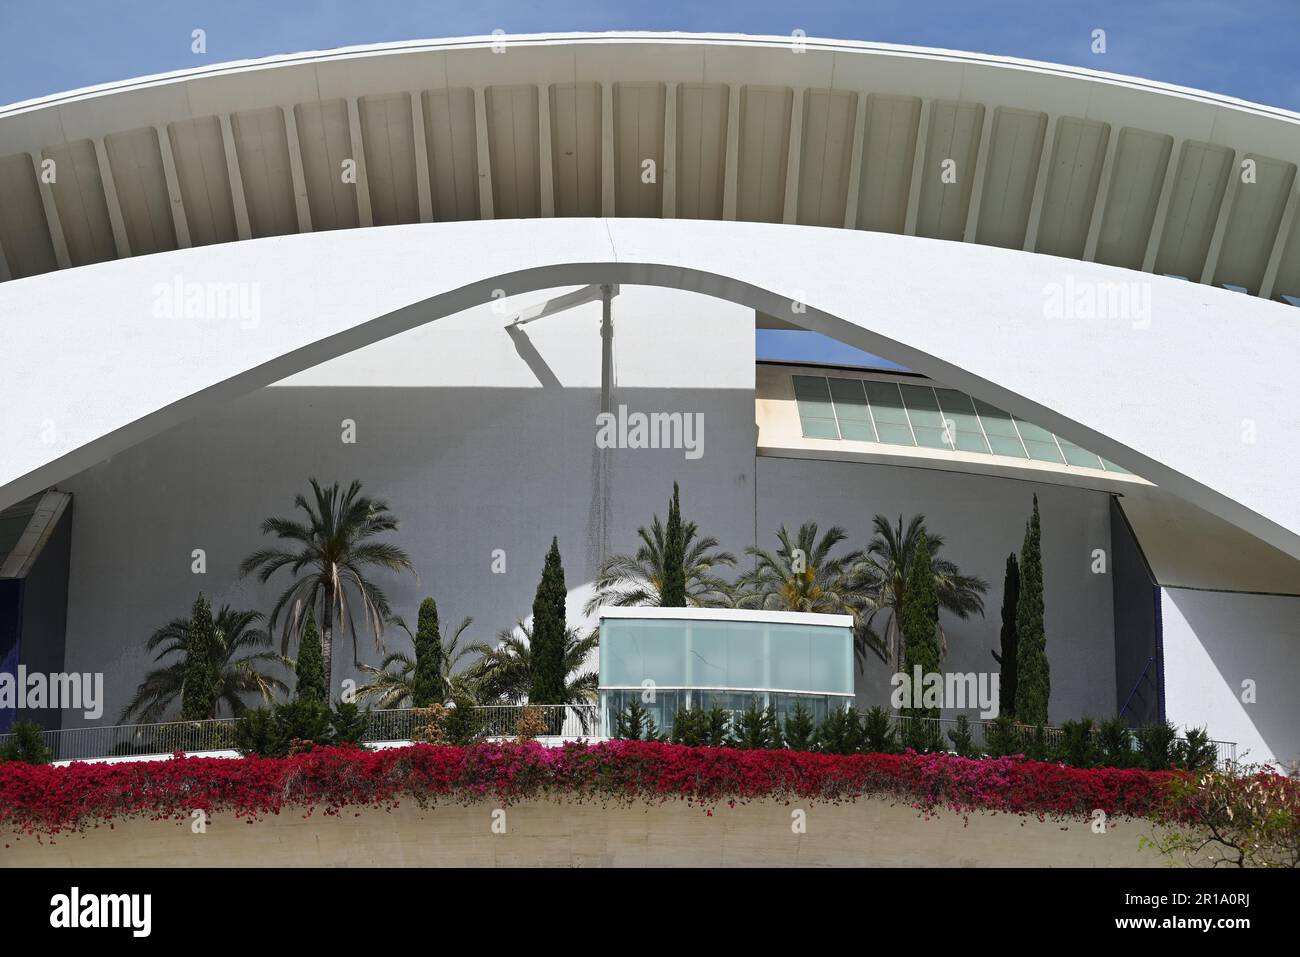 La Città delle Arti e delle Scienze di Valencia, Spagna, è una serie di edifici futuristici progettati dall'architetto Santiago Calatrava. Foto Stock